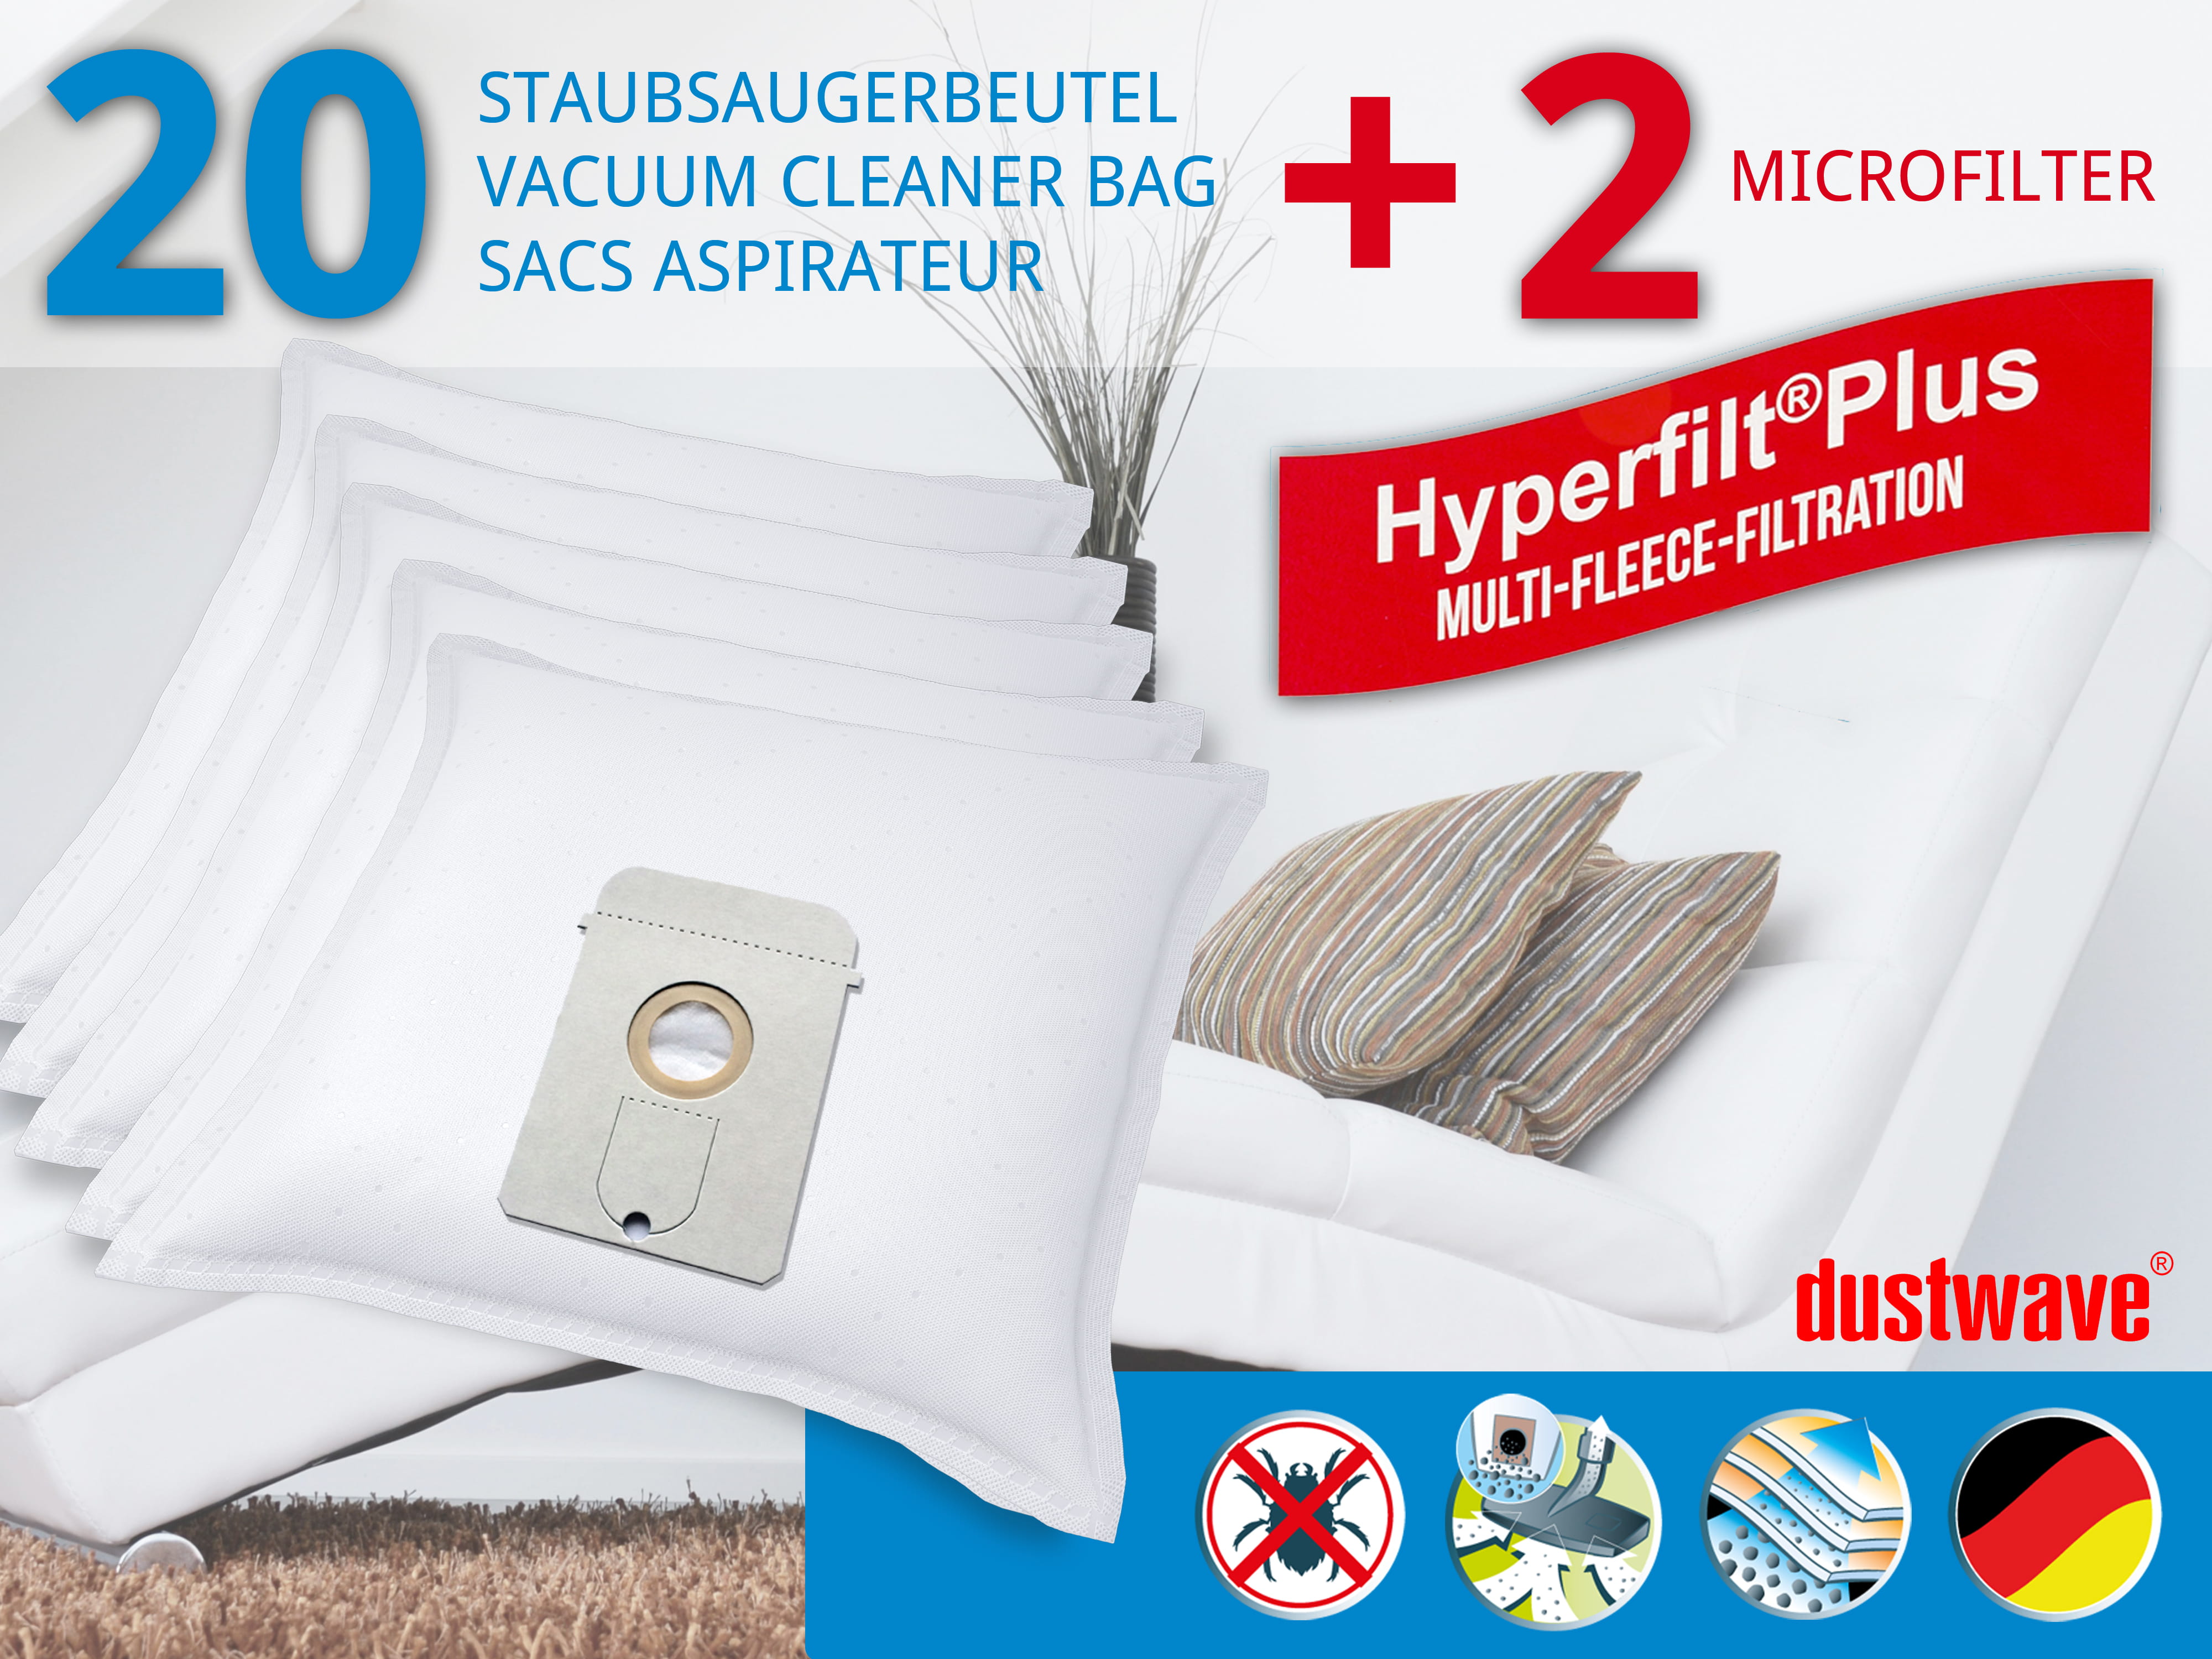 Dustwave® 20 Staubsaugerbeutel für AEG Vampyr 7700.5 - hocheffizient, mehrlagiges Mikrovlies mit Hygieneverschluss - Made in Germany